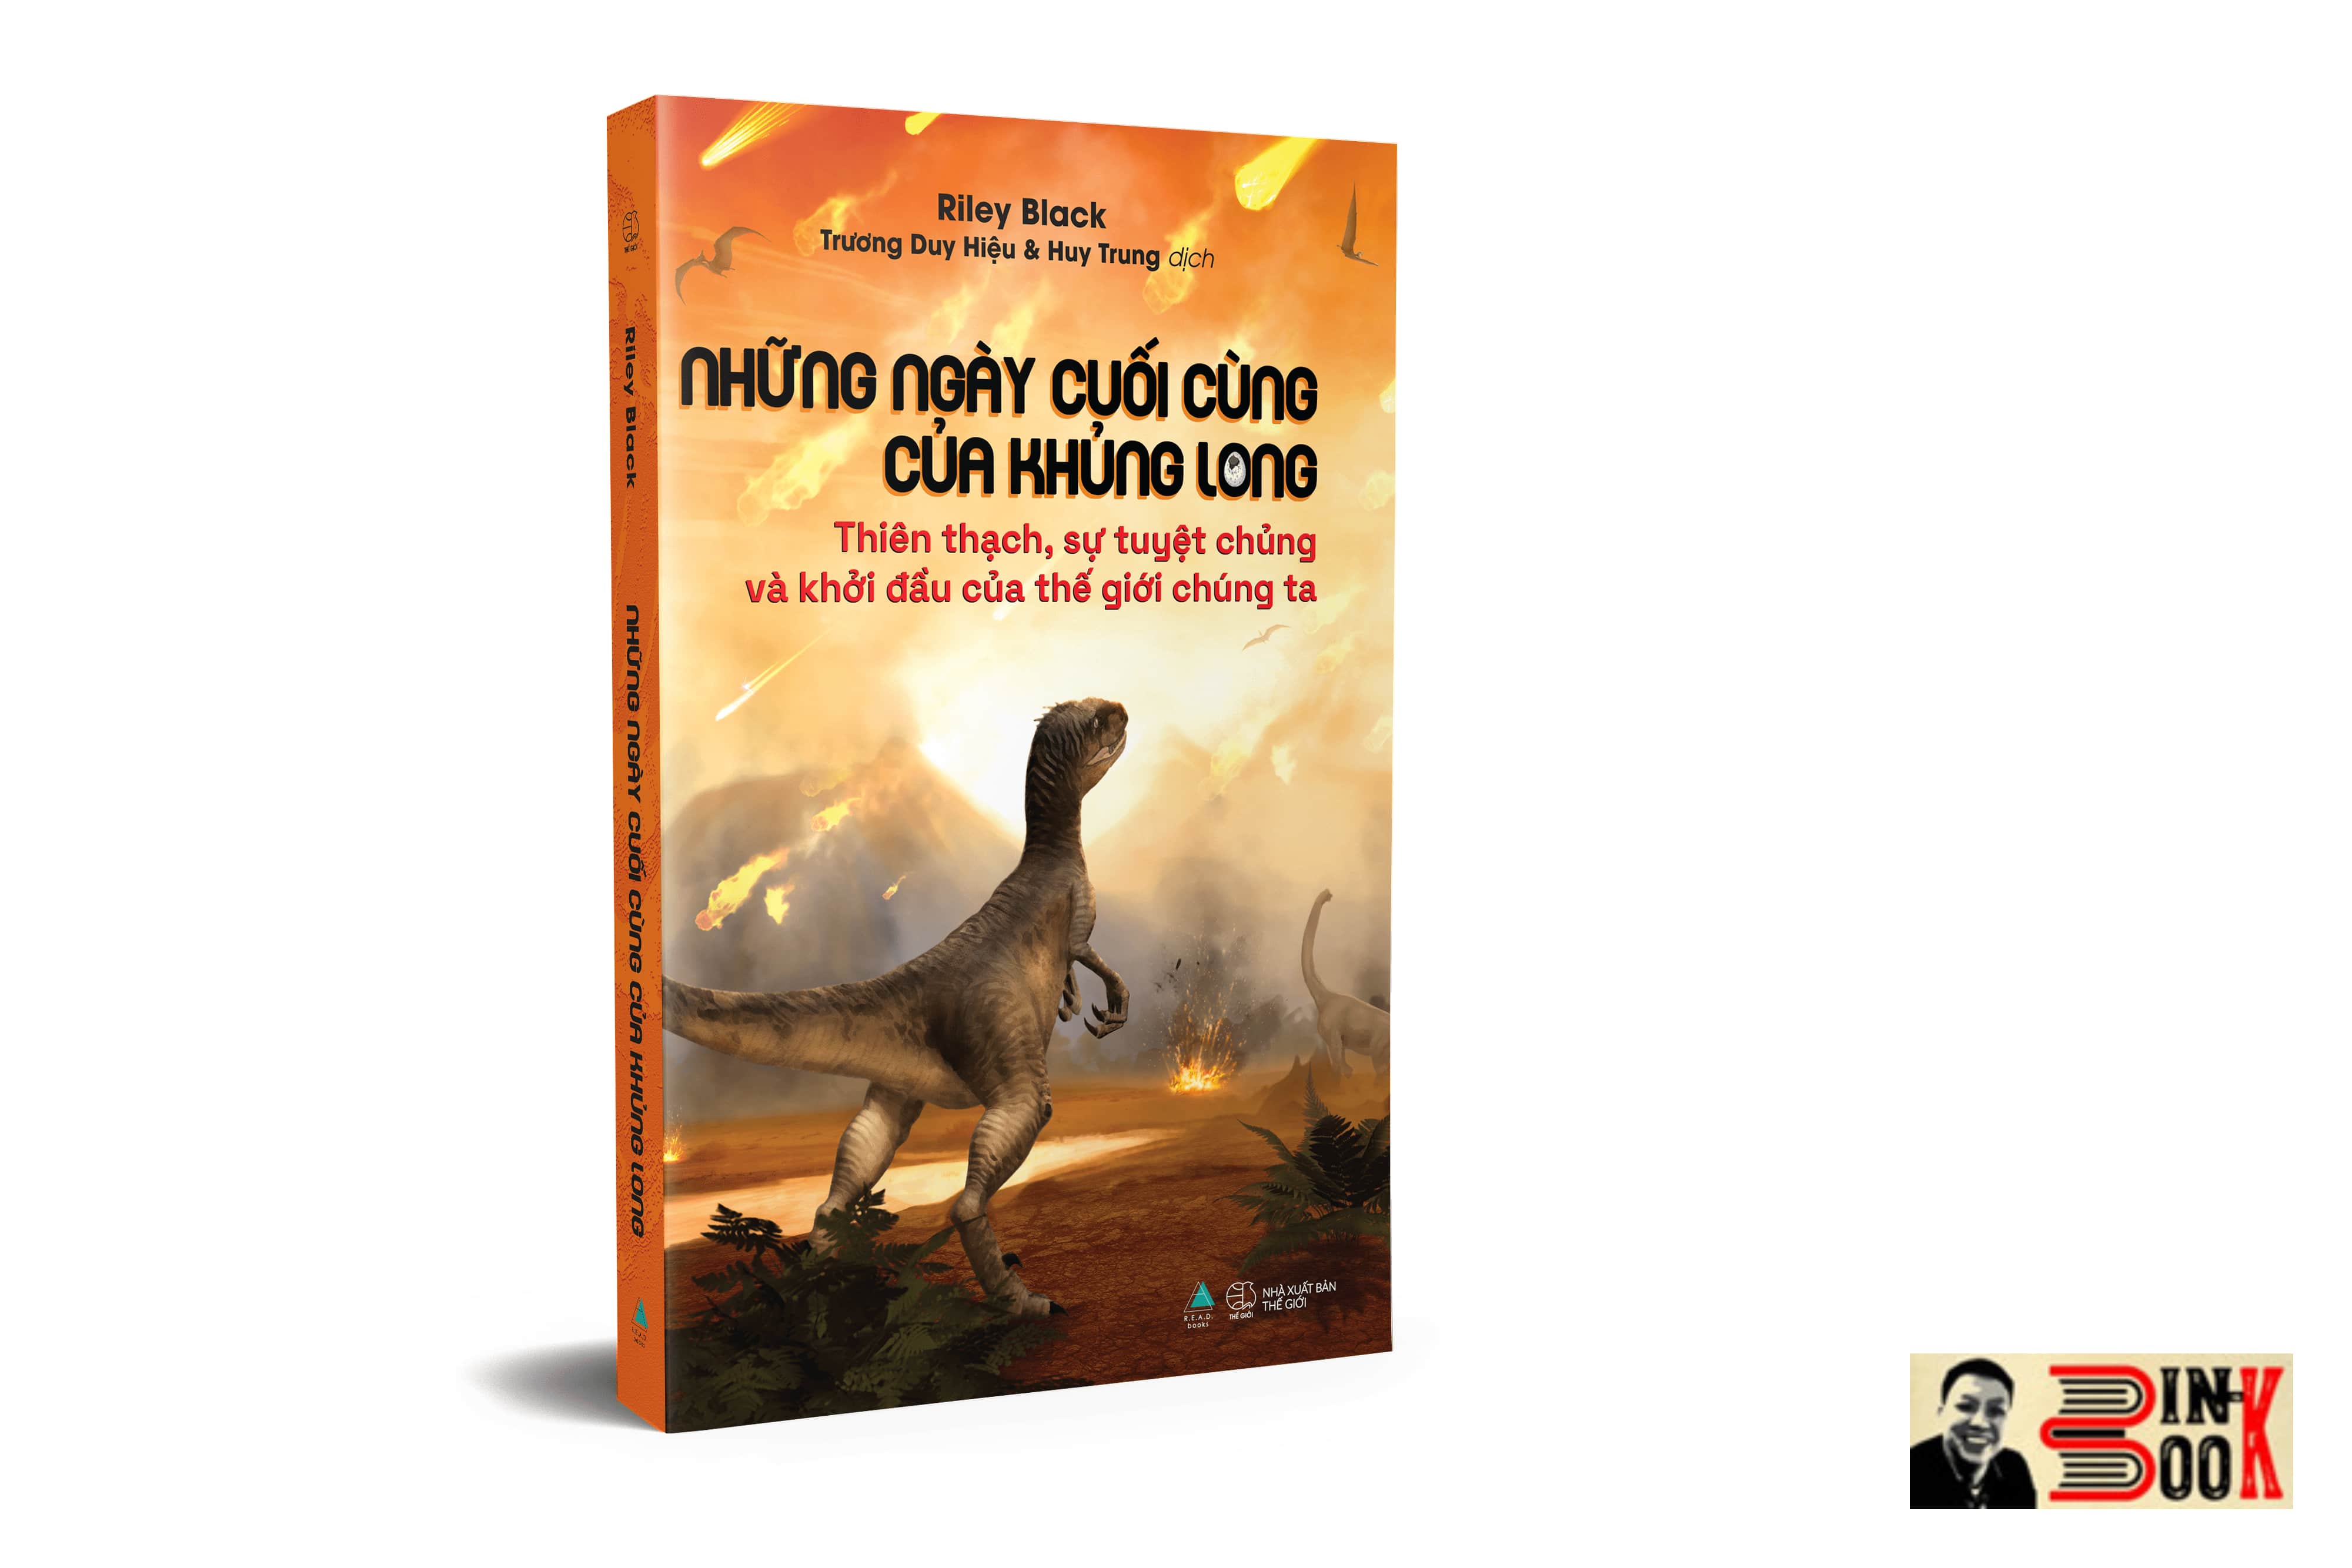 NHỮNG NGÀY CUỐI CÙNG CỦA KHỦNG LONG – Thiên thạch, sự tuyệt chủng và khởi đầu của thế giới chúng ta – Riley Black – Trương Duy Hiệu và Huy Trung dịch – R.E.A.D books – AZ VIETNAM – NXB Thế Giới (Bìa mềm)